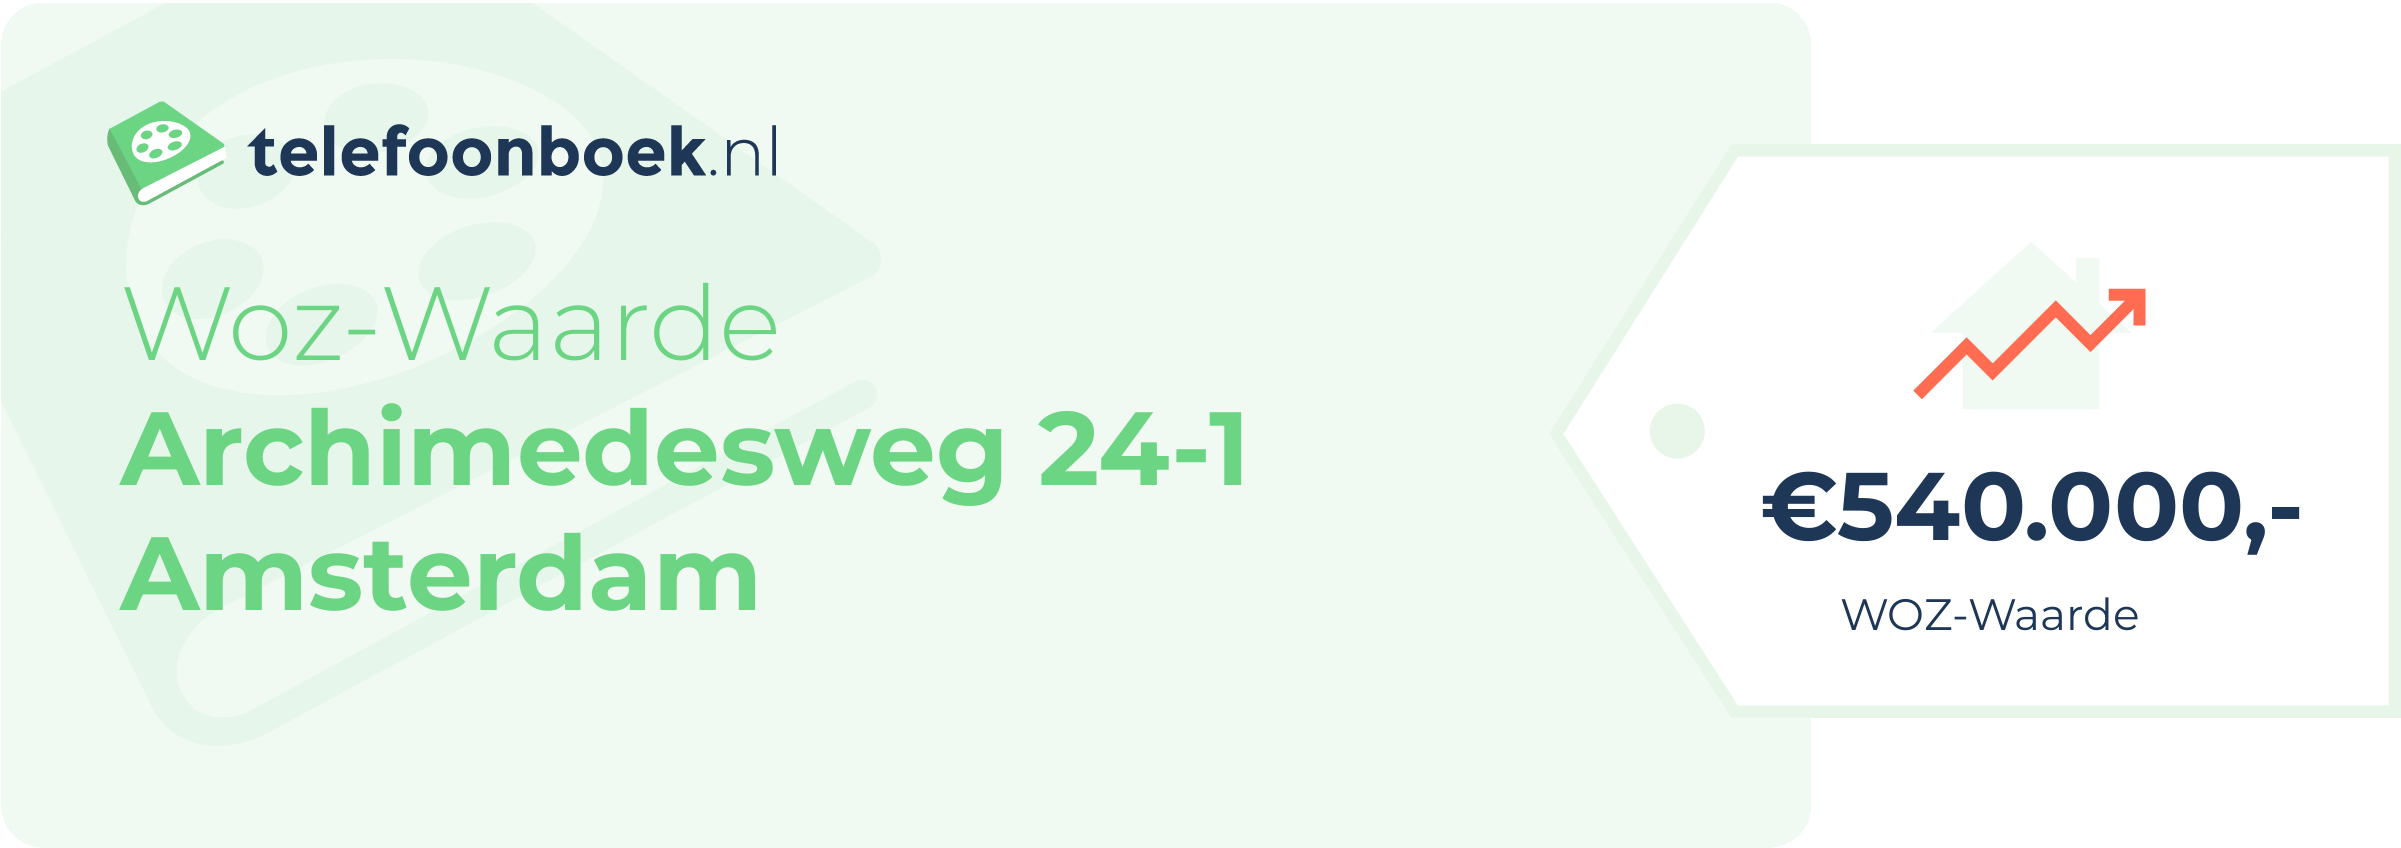 WOZ-waarde Archimedesweg 24-1 Amsterdam